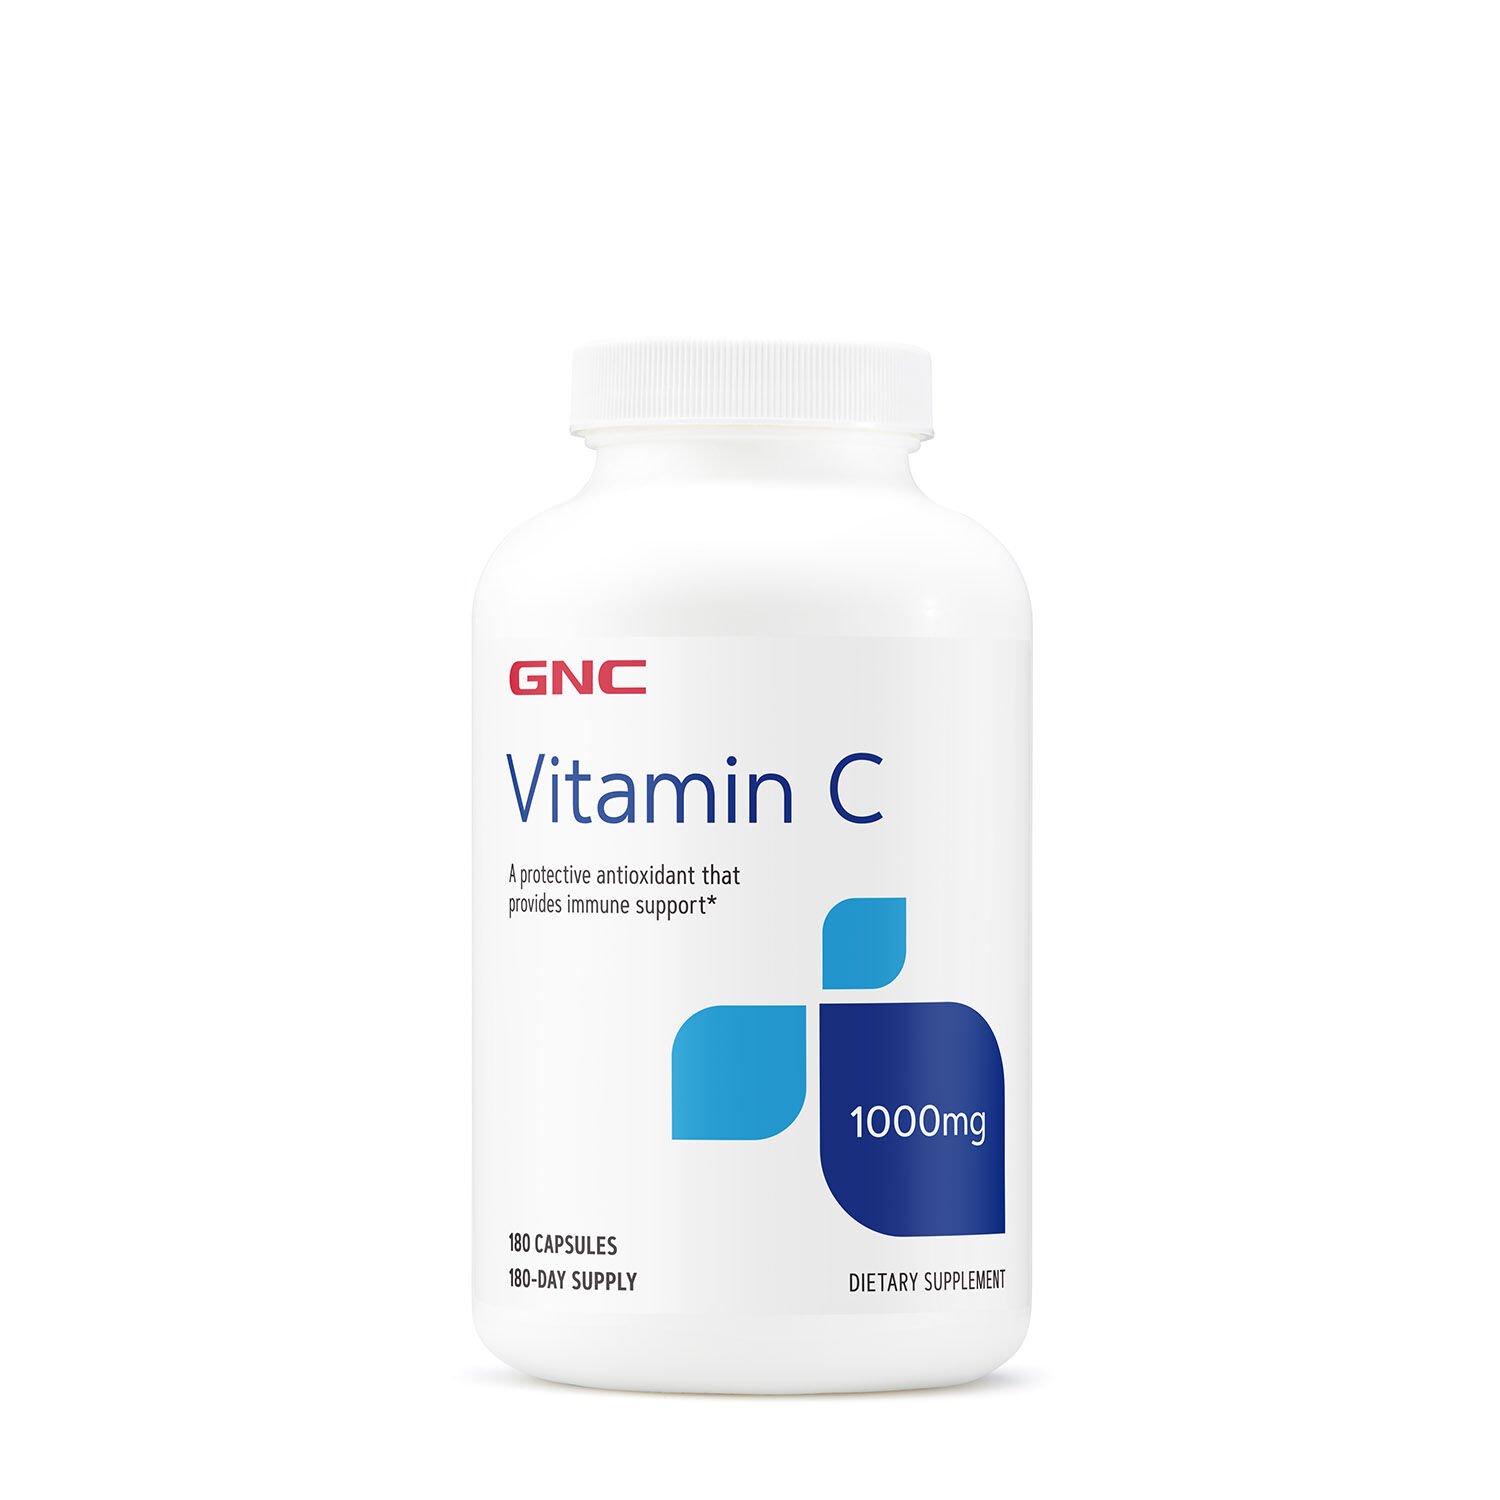 Витамины и минералы GNC Vitamin C 1000 mg, 180 капсул,  мл, GNC. Витамины и минералы. Поддержание здоровья Укрепление иммунитета 